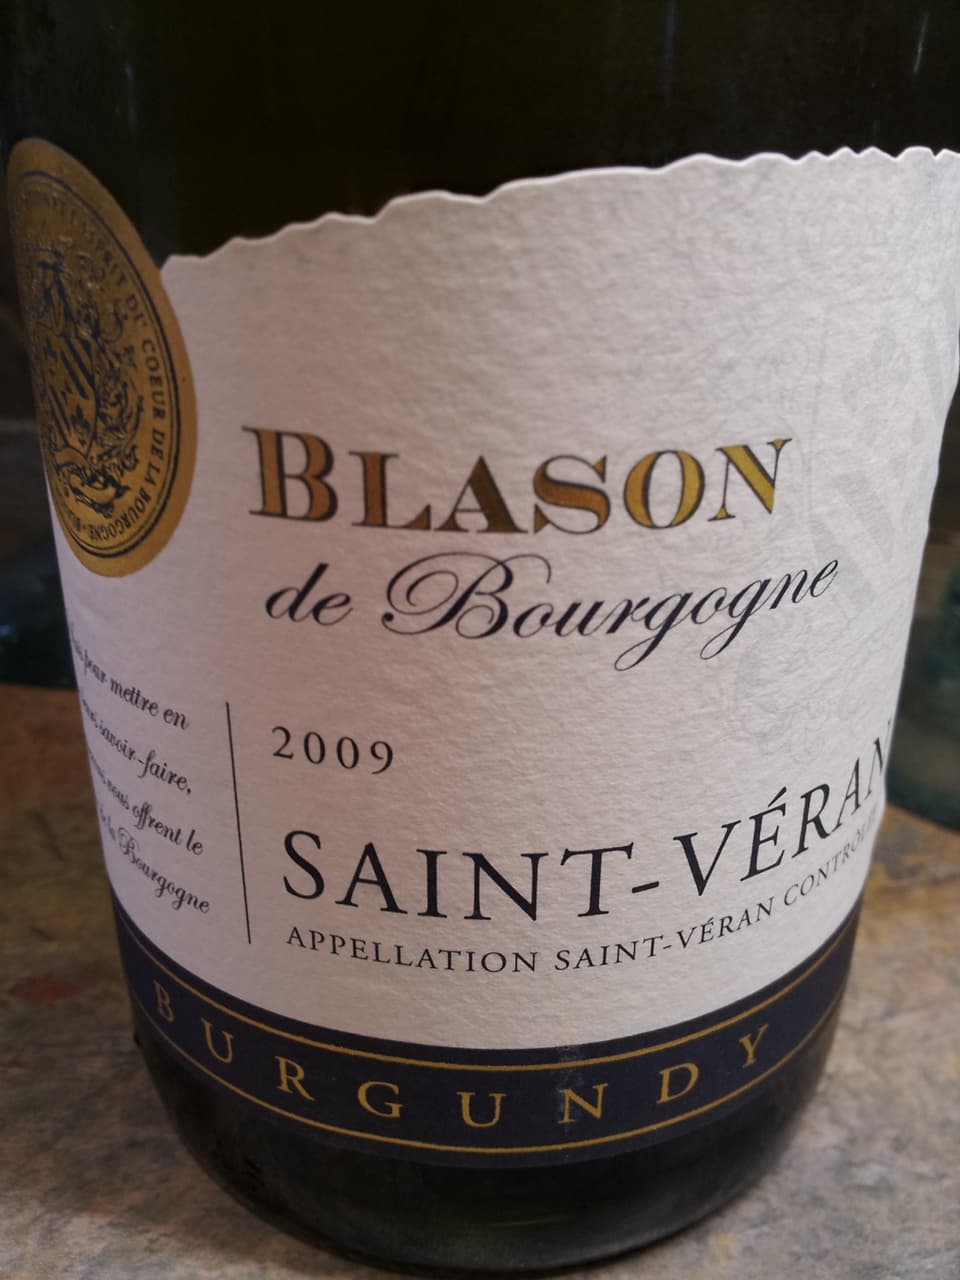 Blason de Bourgogne Saint Veran 2009